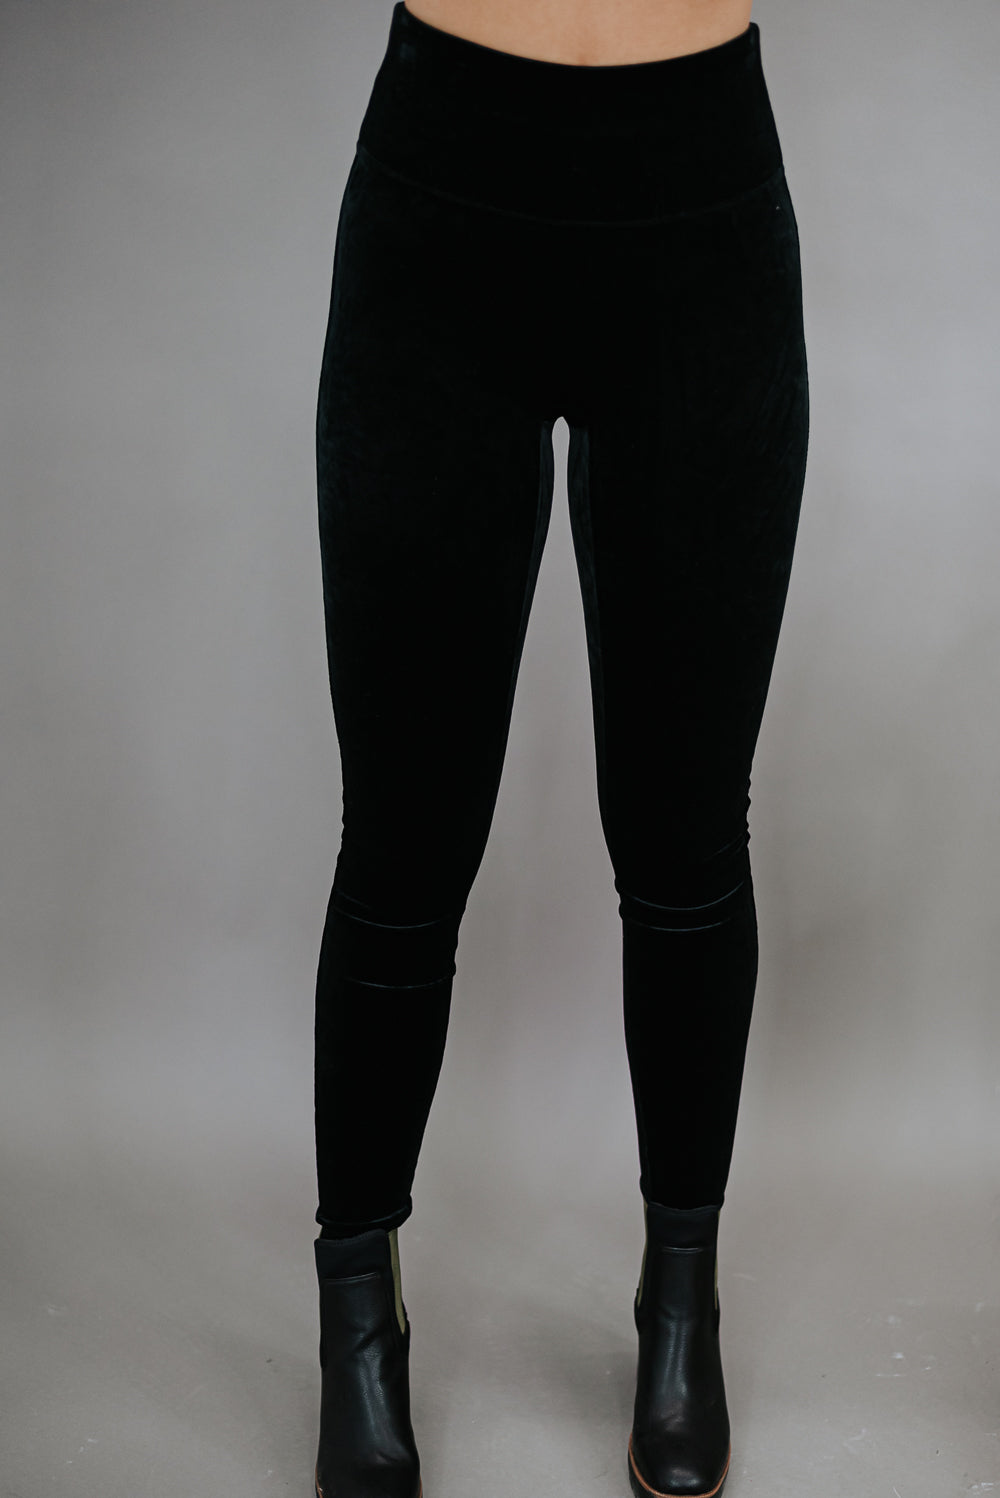 Assets SPANX Women's Shaping Velvet Leggings in Very Black S,M,L,1X :  r/gym_apparel_for_women